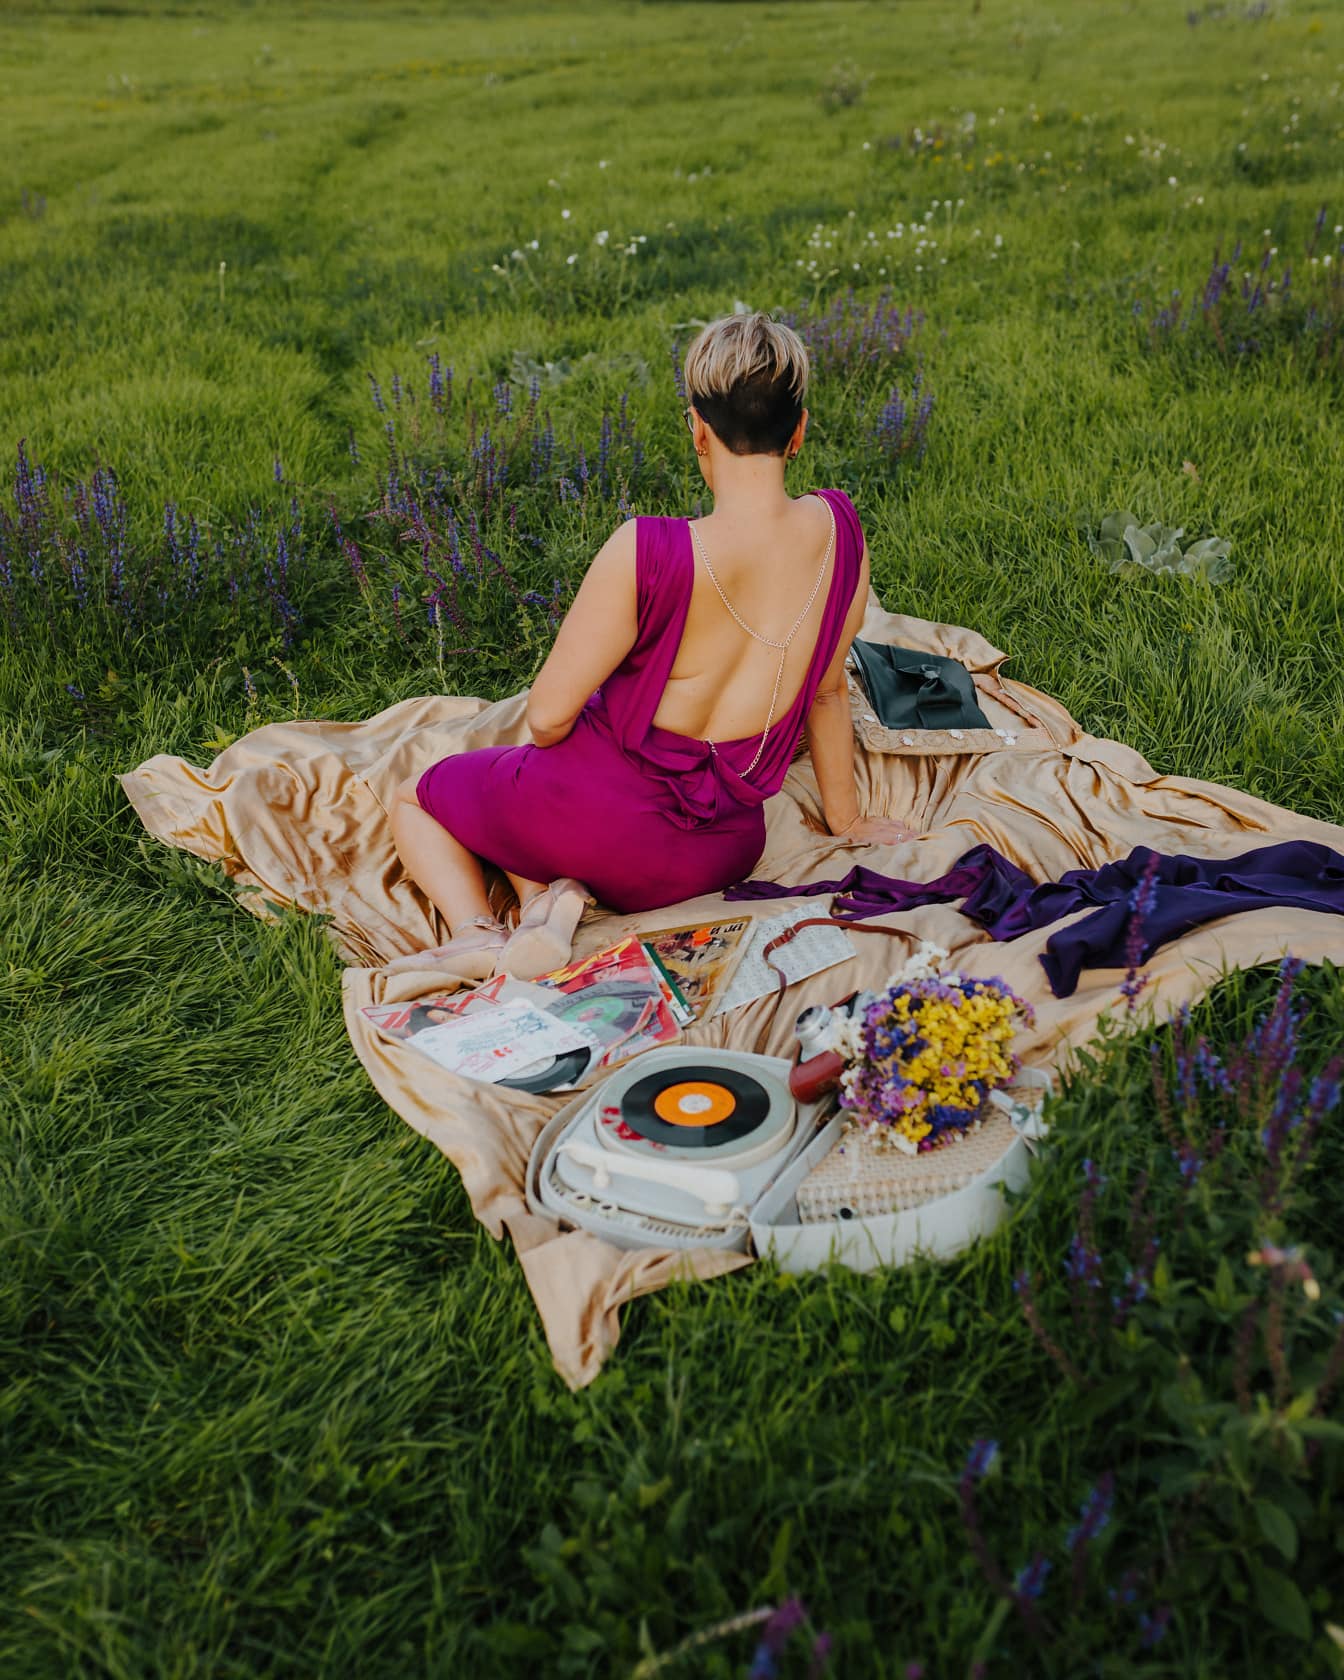 Hermosa dama posando con un elegante vestido púrpura sobre una manta de picnic